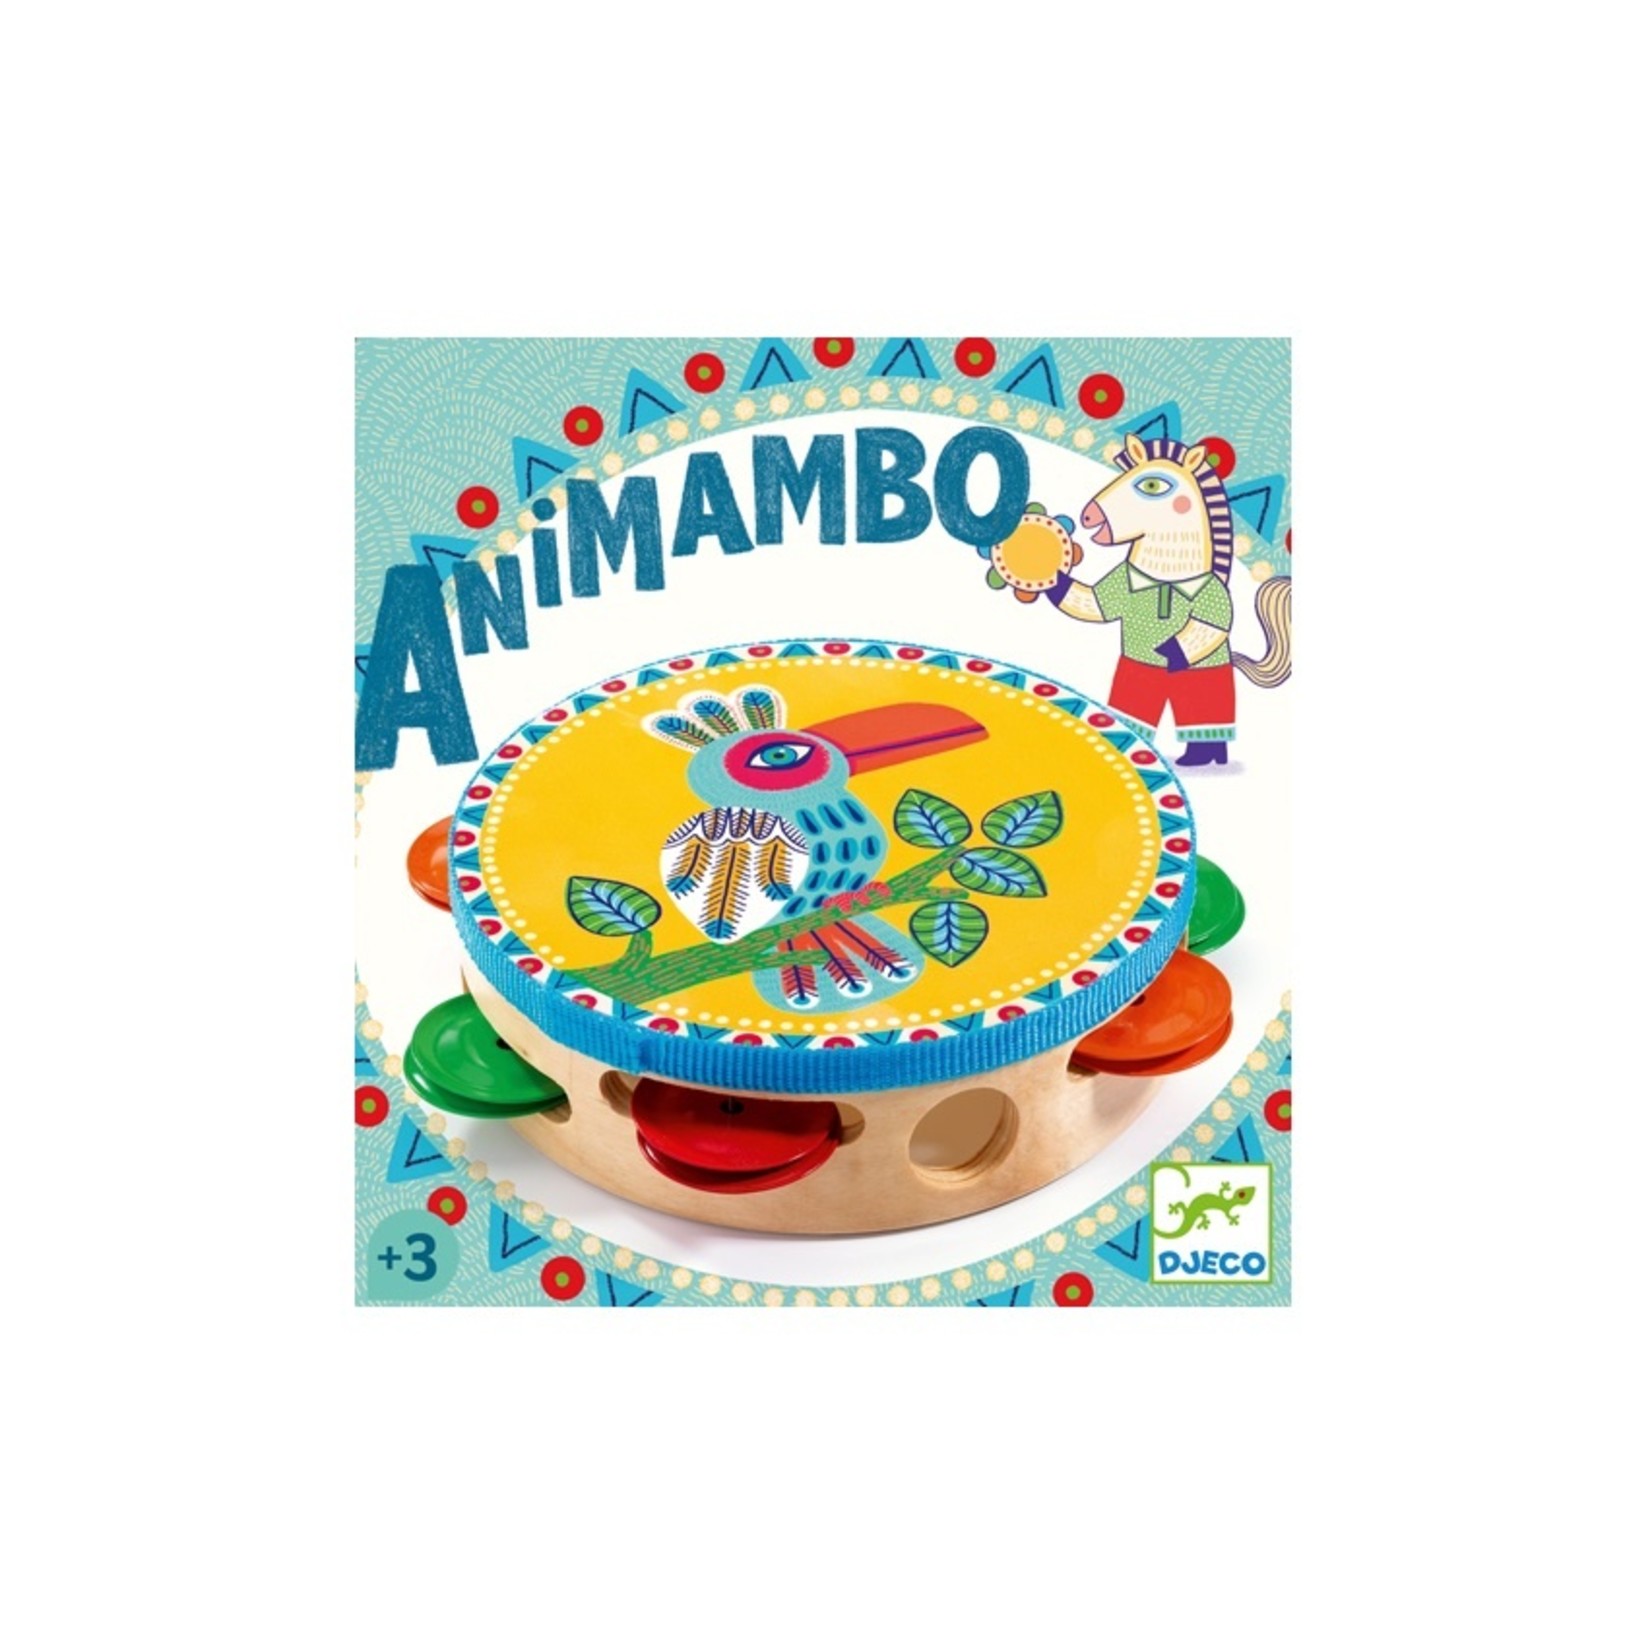 Djeco Animambo - Tambourine